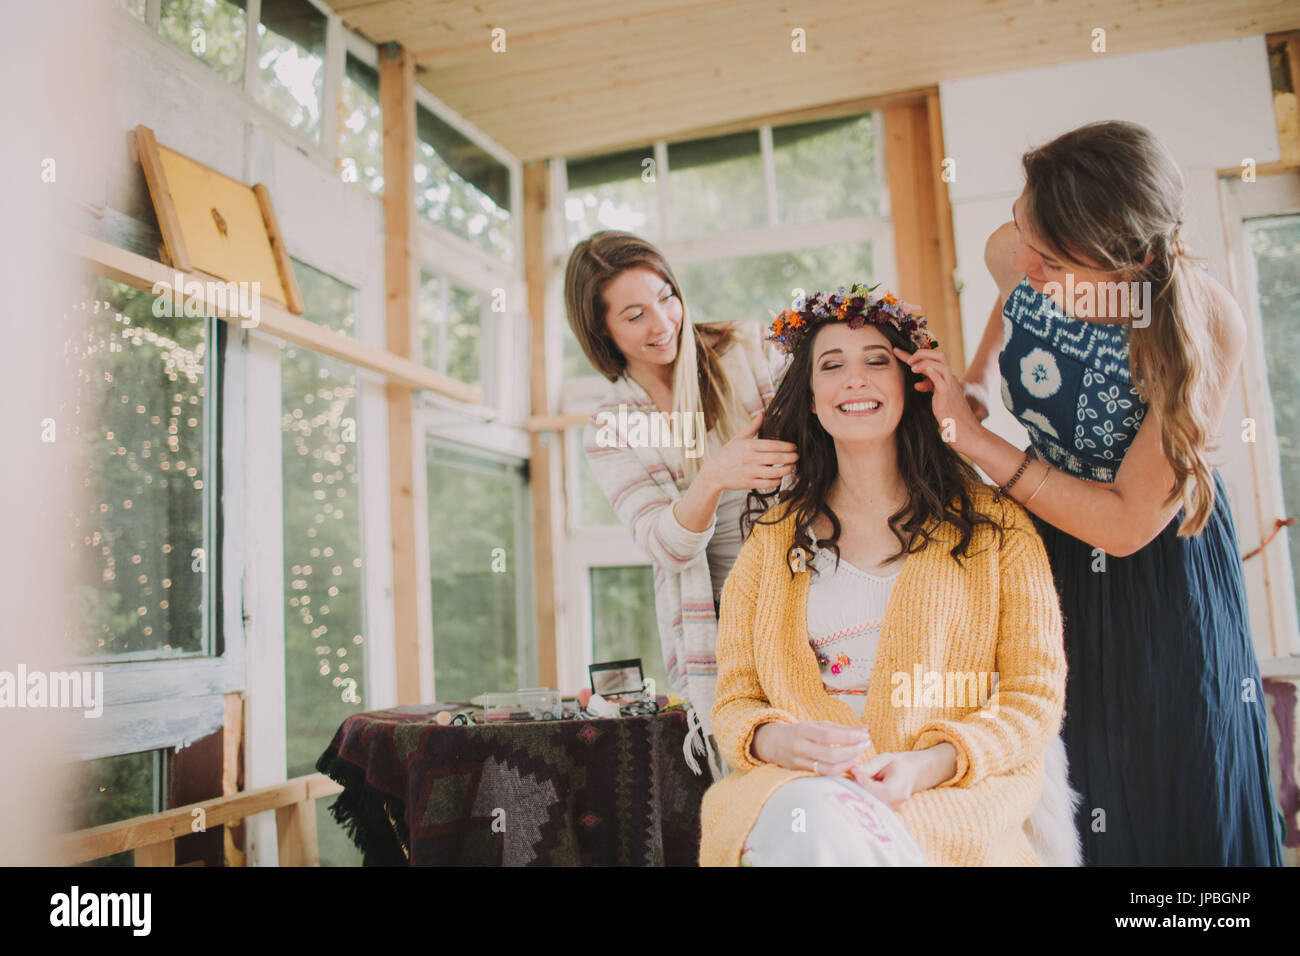 Nozze alternative, preparazione, amici decorare sposa con ghirlanda floreale Foto Stock